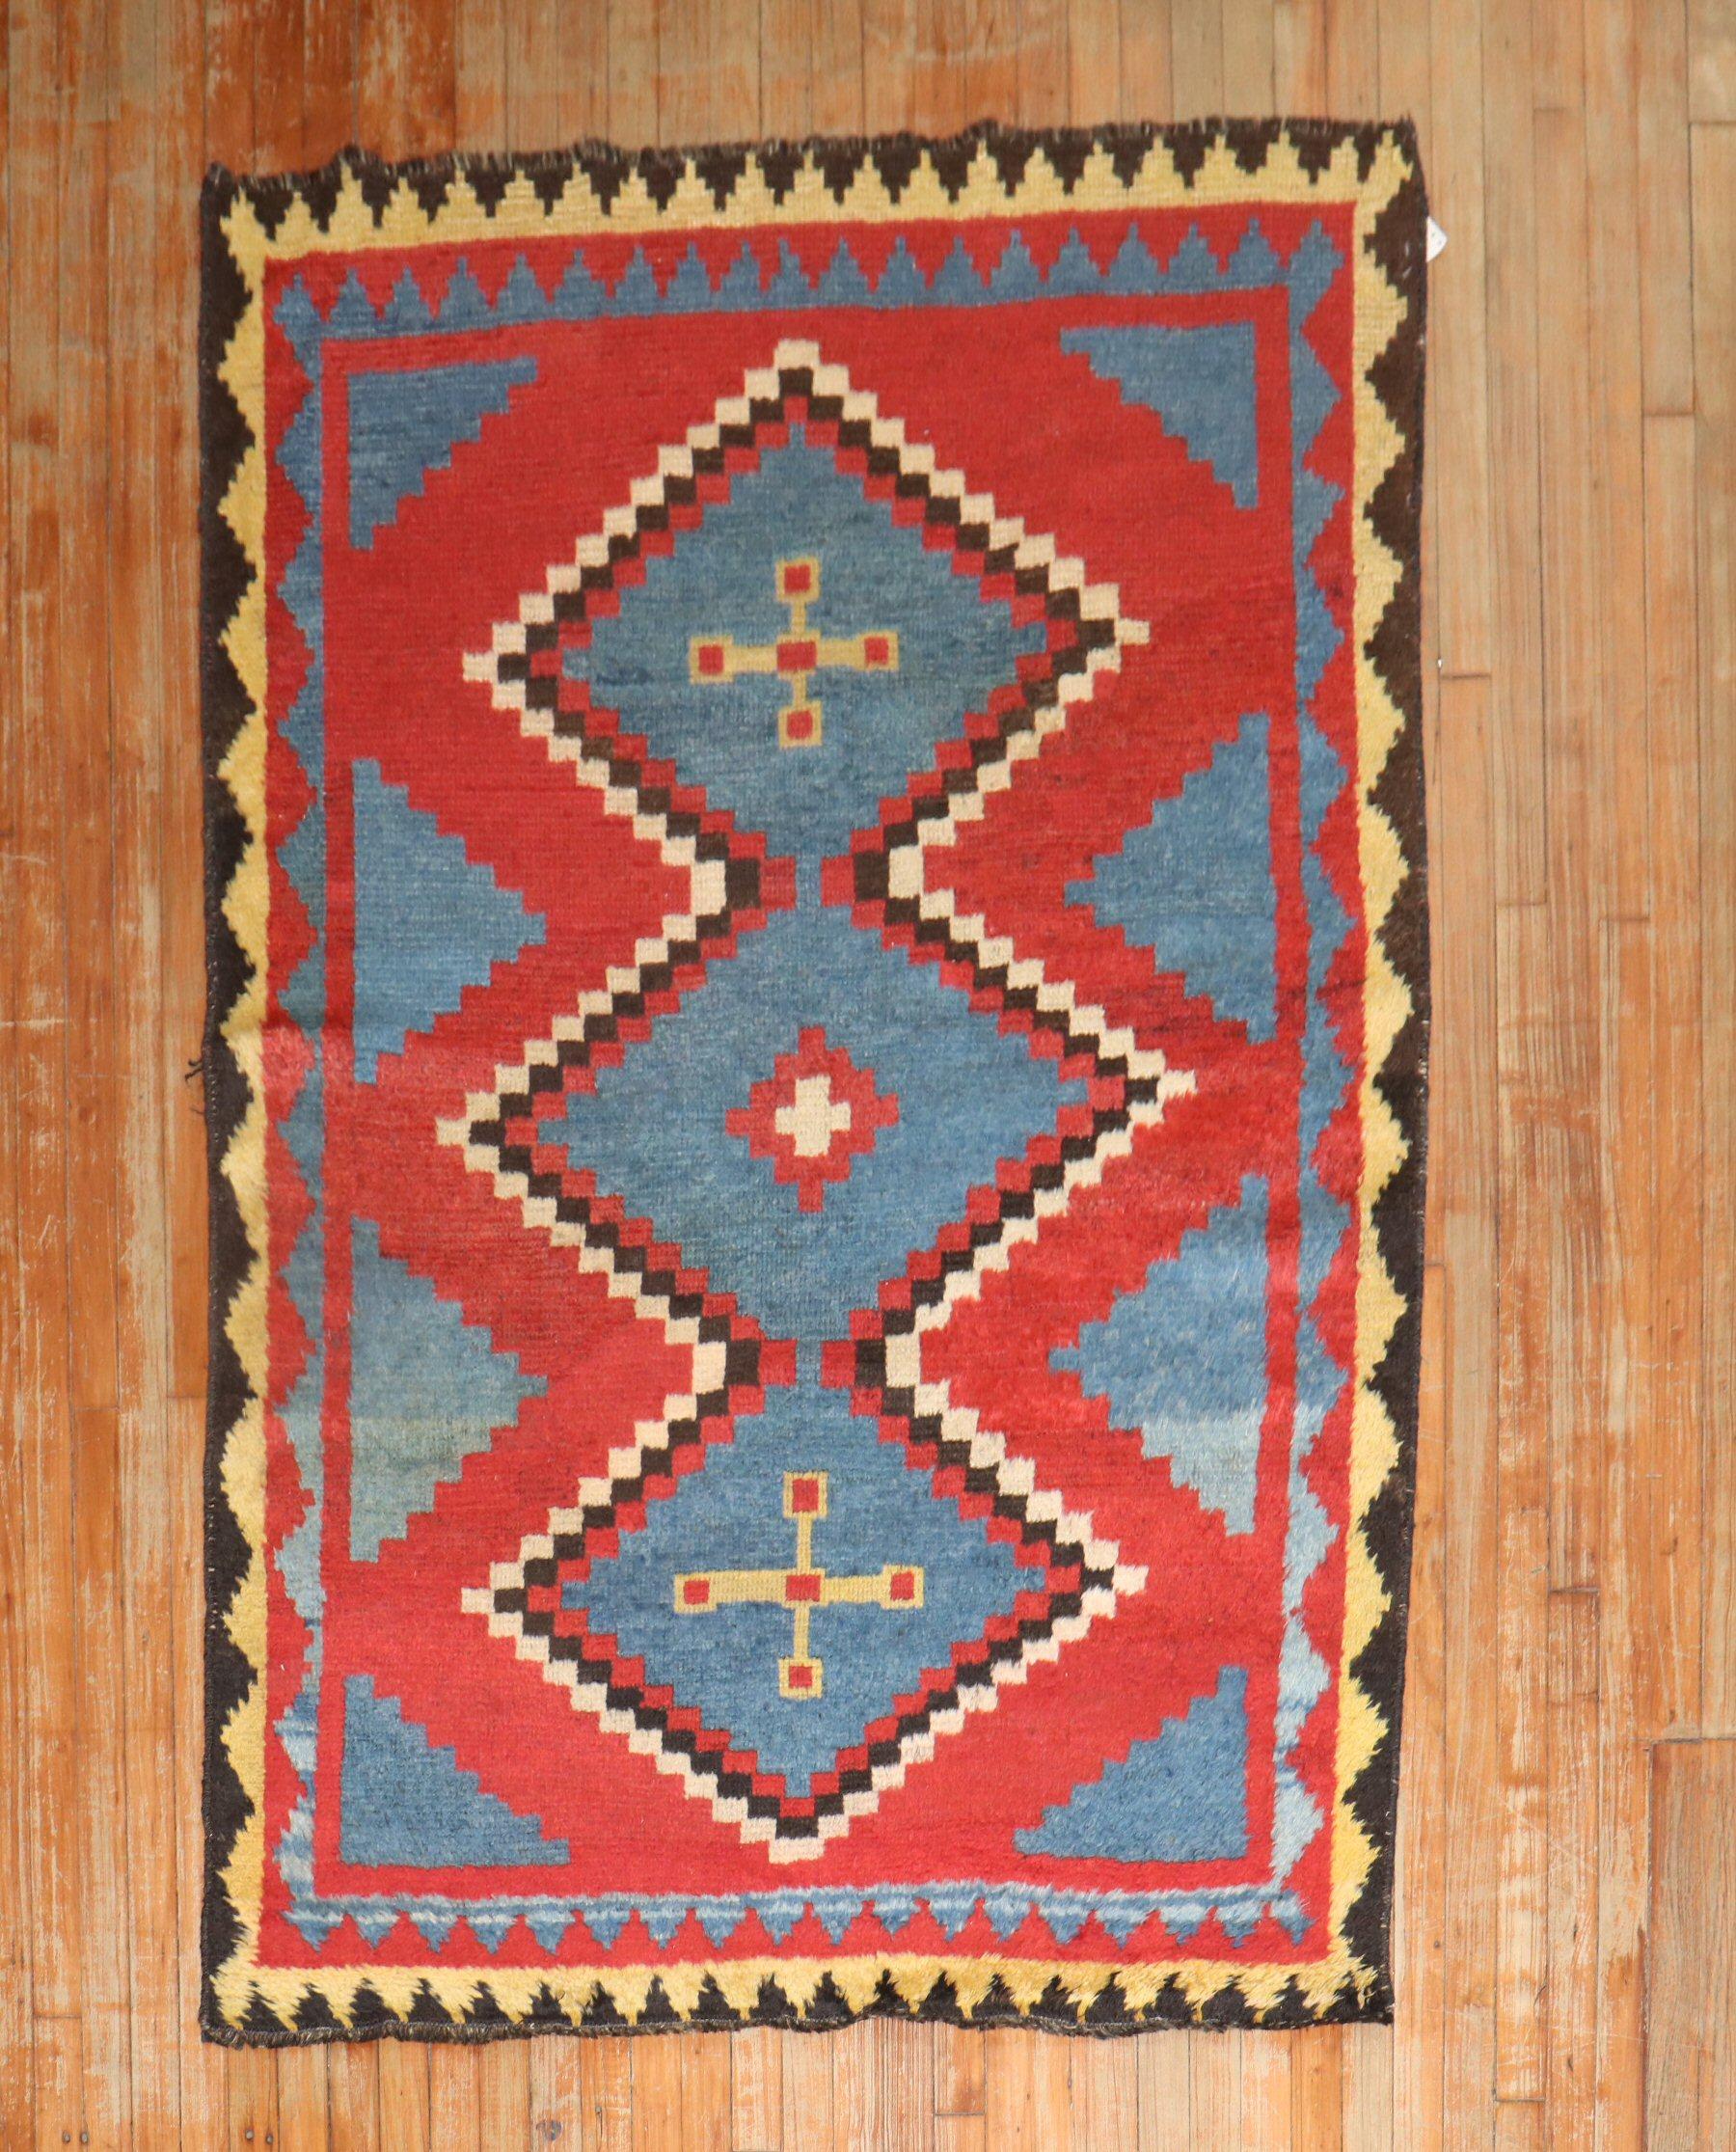 Tapis géométrique persan Gabbeh du début du 20e siècle, de taille accentuée, provenant de la collection JP WILLBORG en Europe.

Mesures : 4'6'' x 6'8''.